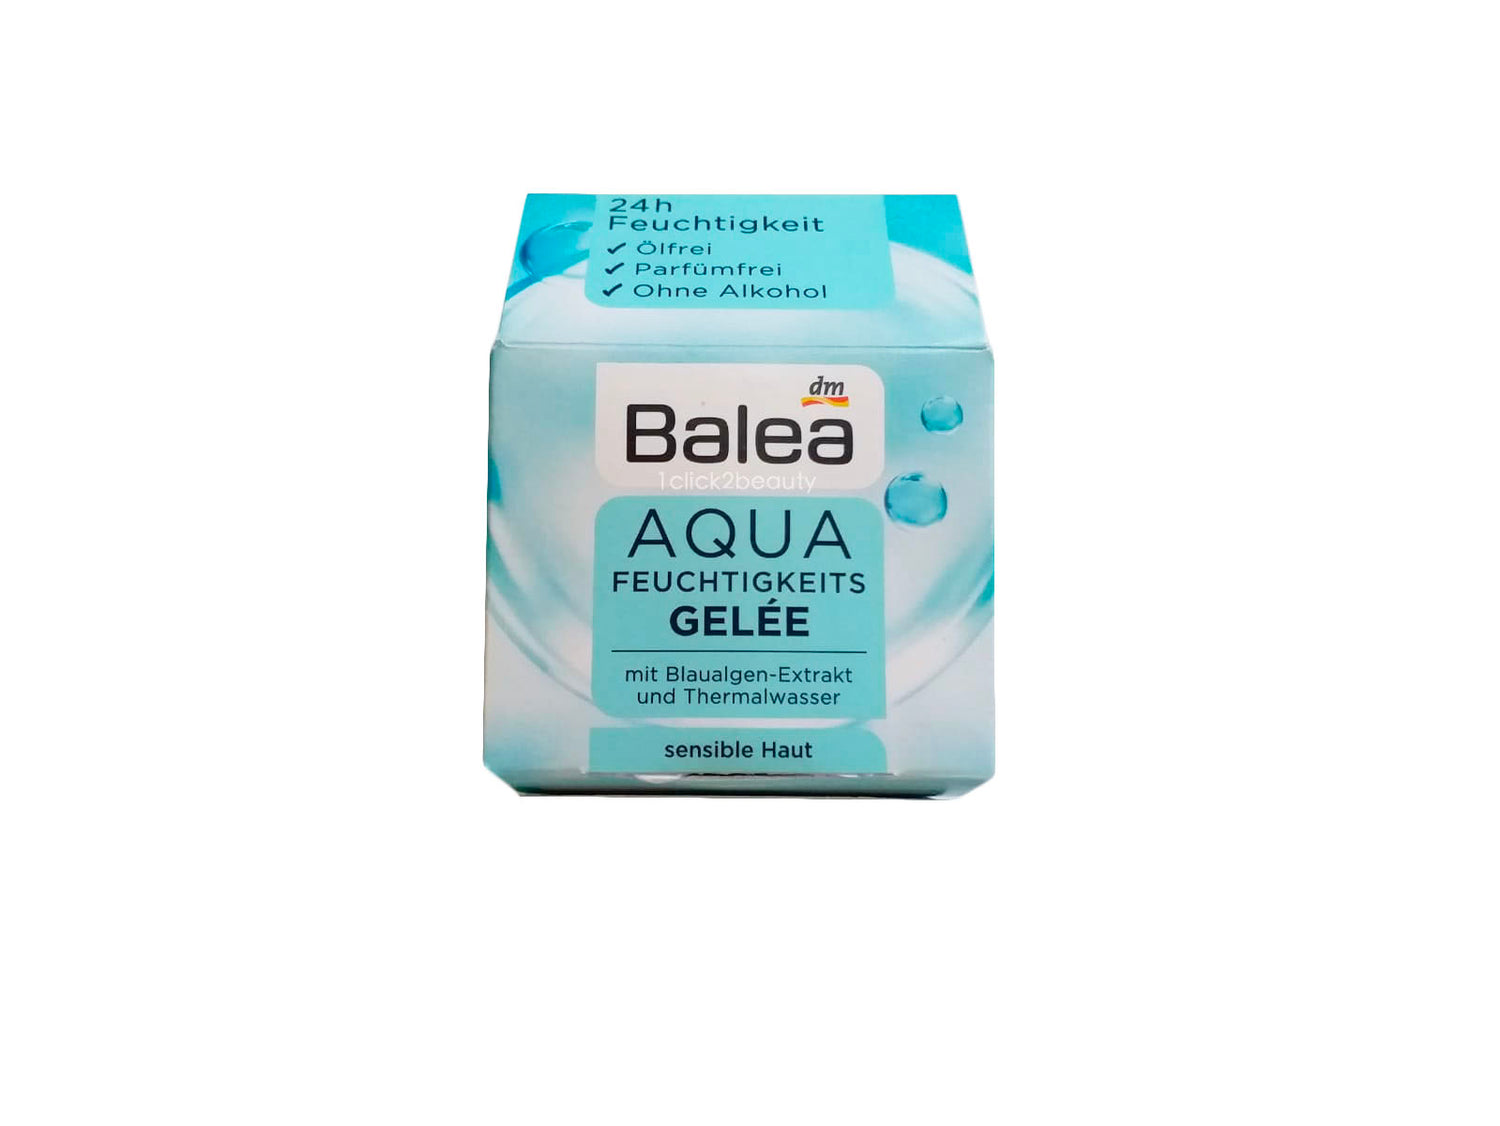 德國Balea Aqua Feuchtigekeits Gelee 水份保濕啫喱面霜 50ML - buy European skincare in Hong Kong - 1click2beauty